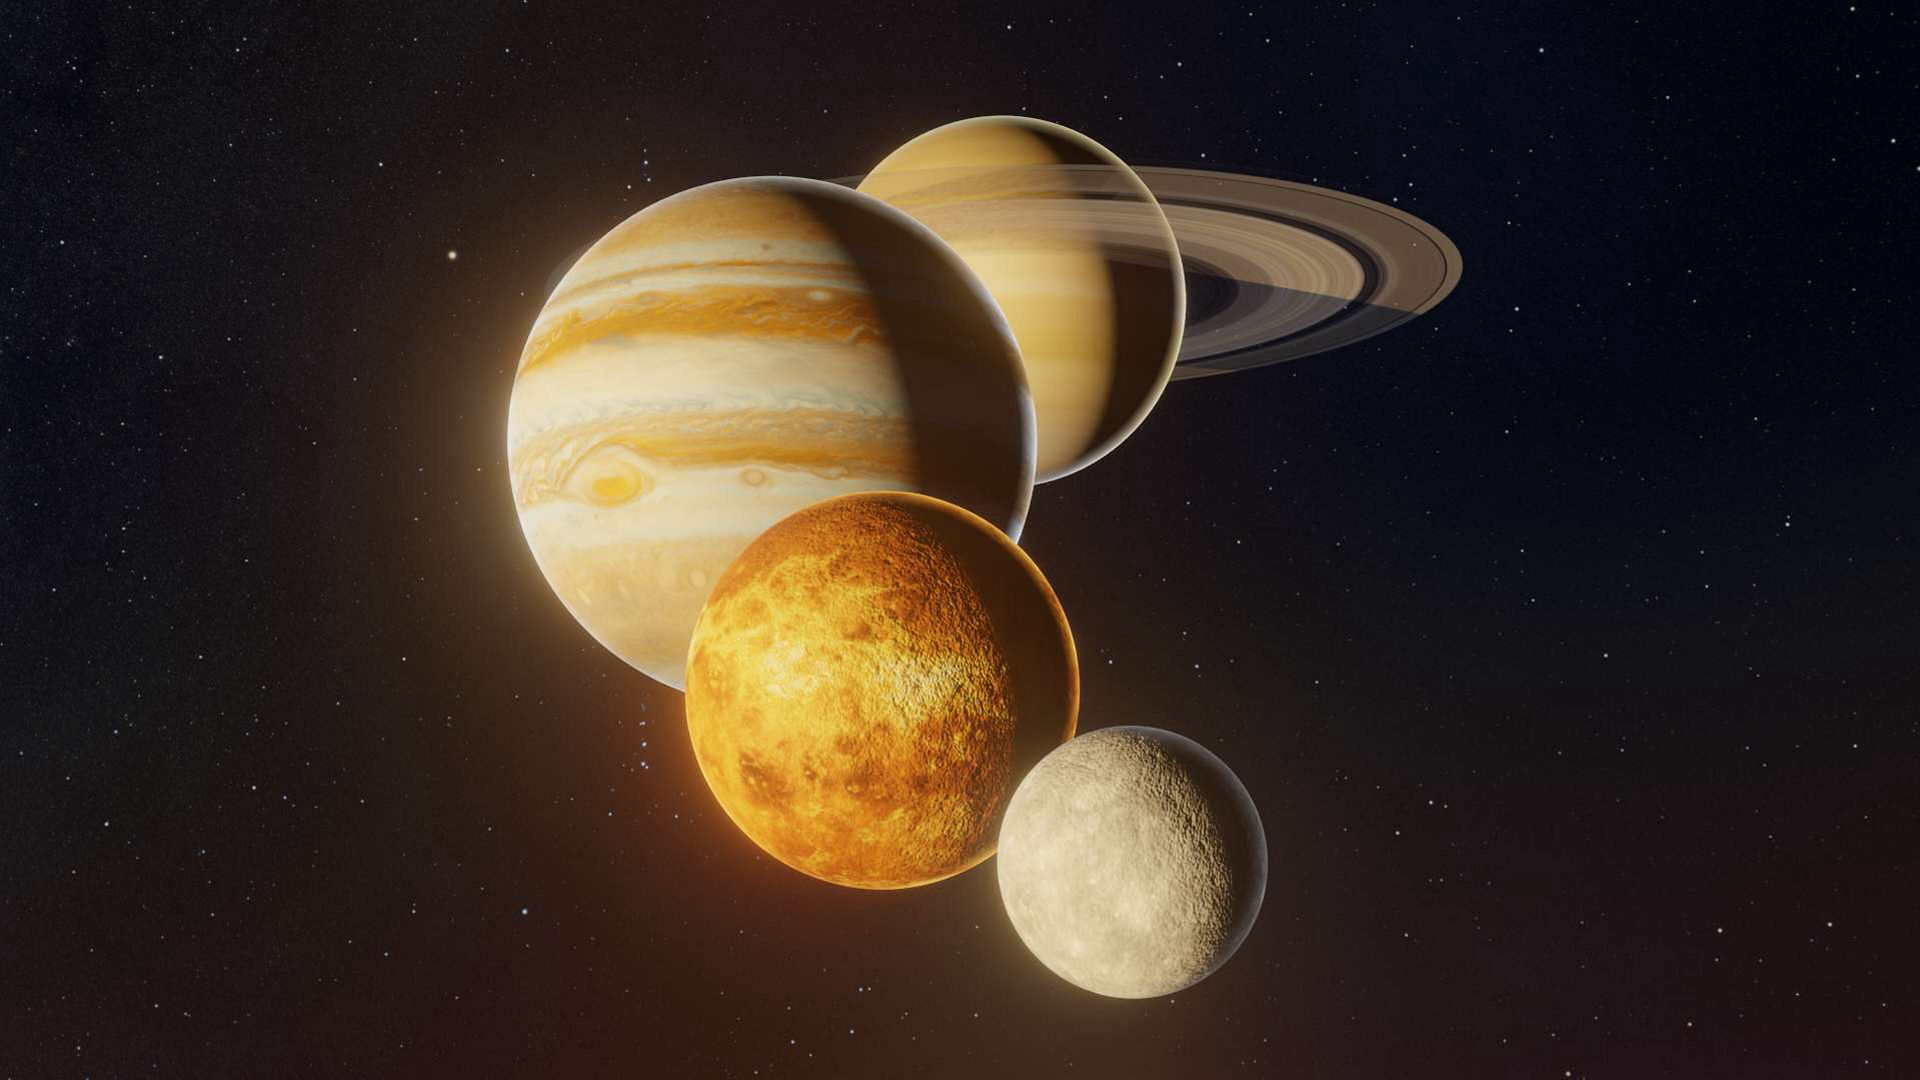 Saturn, Jupiter, Venus, and Mercury